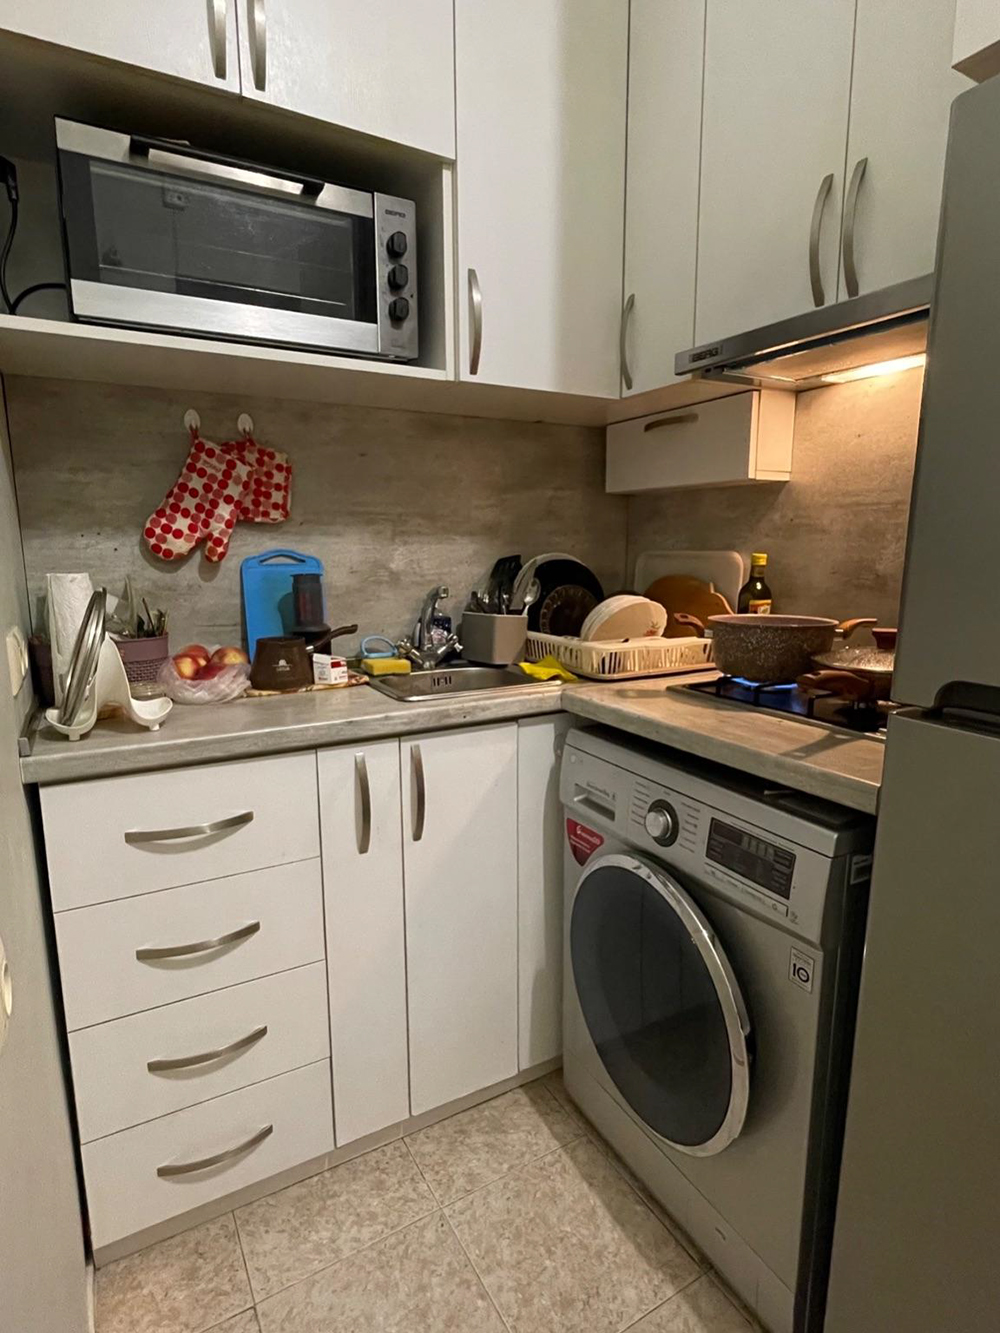 Узкая кухня предназначена только для готовки — такие в большинстве армянских квартир